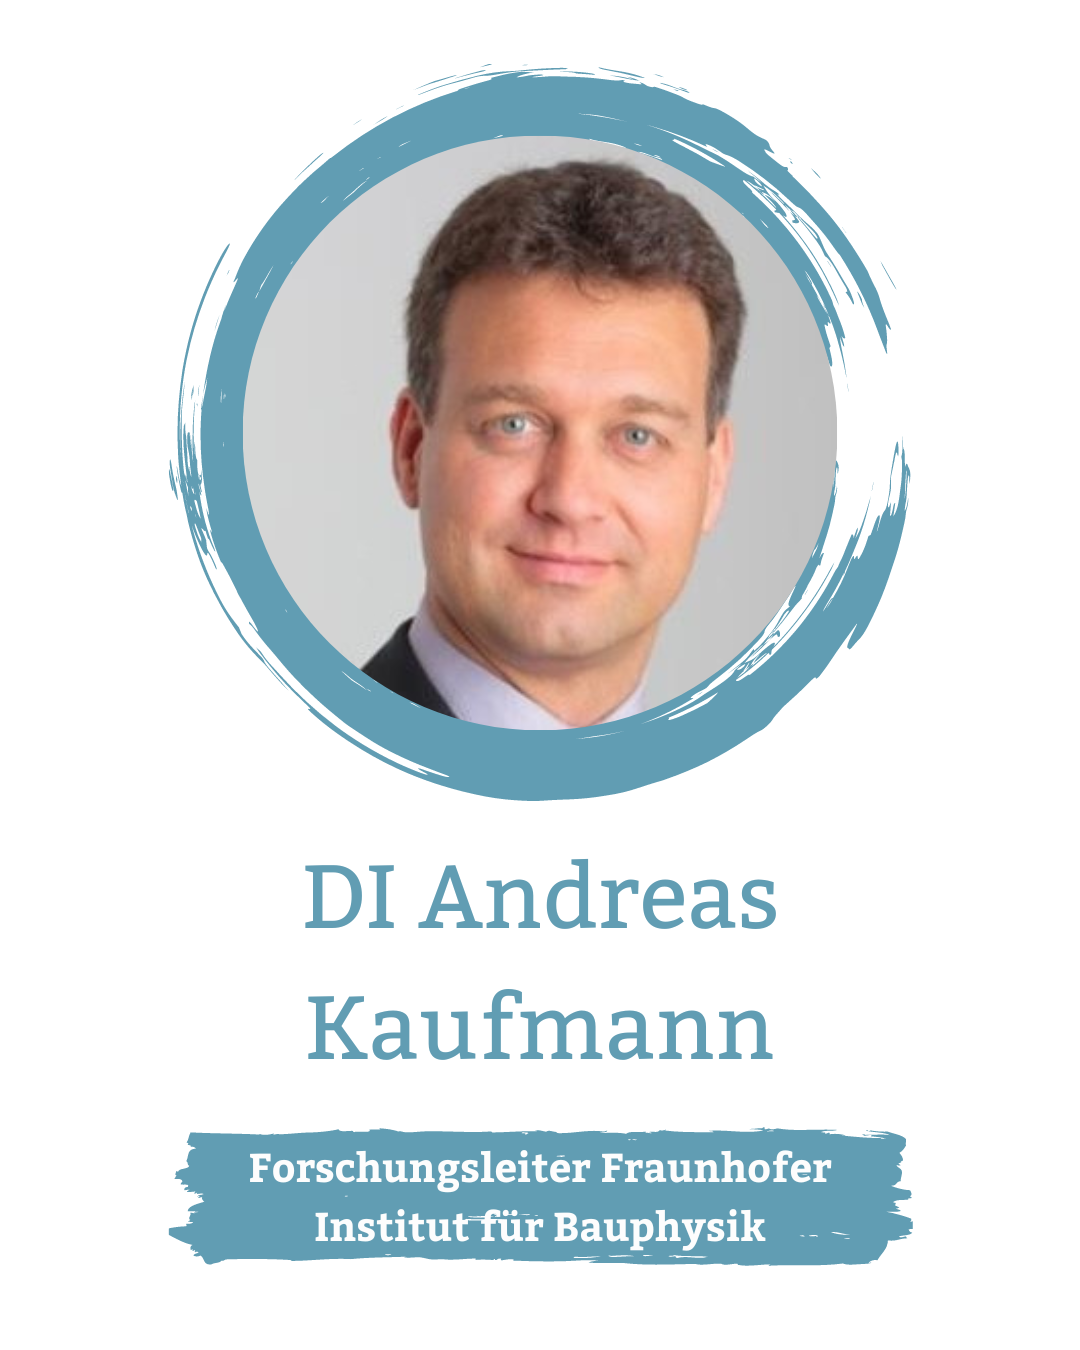 DI. Andreas Kaufmann